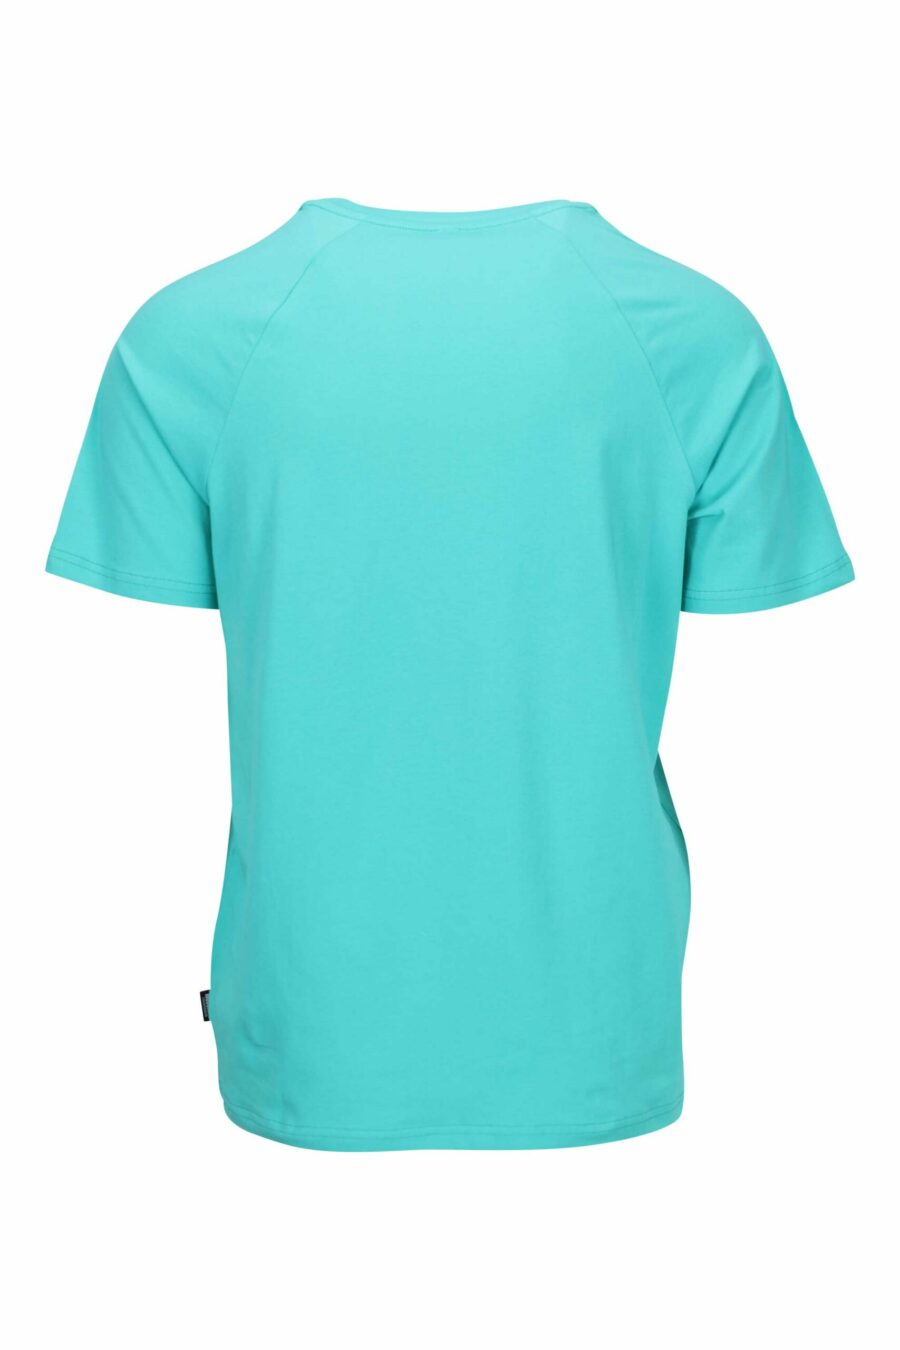 T-shirt azul água-marinha com o logótipo do urso "underbear" na faixa do ombro - 667113602400 1 scaled